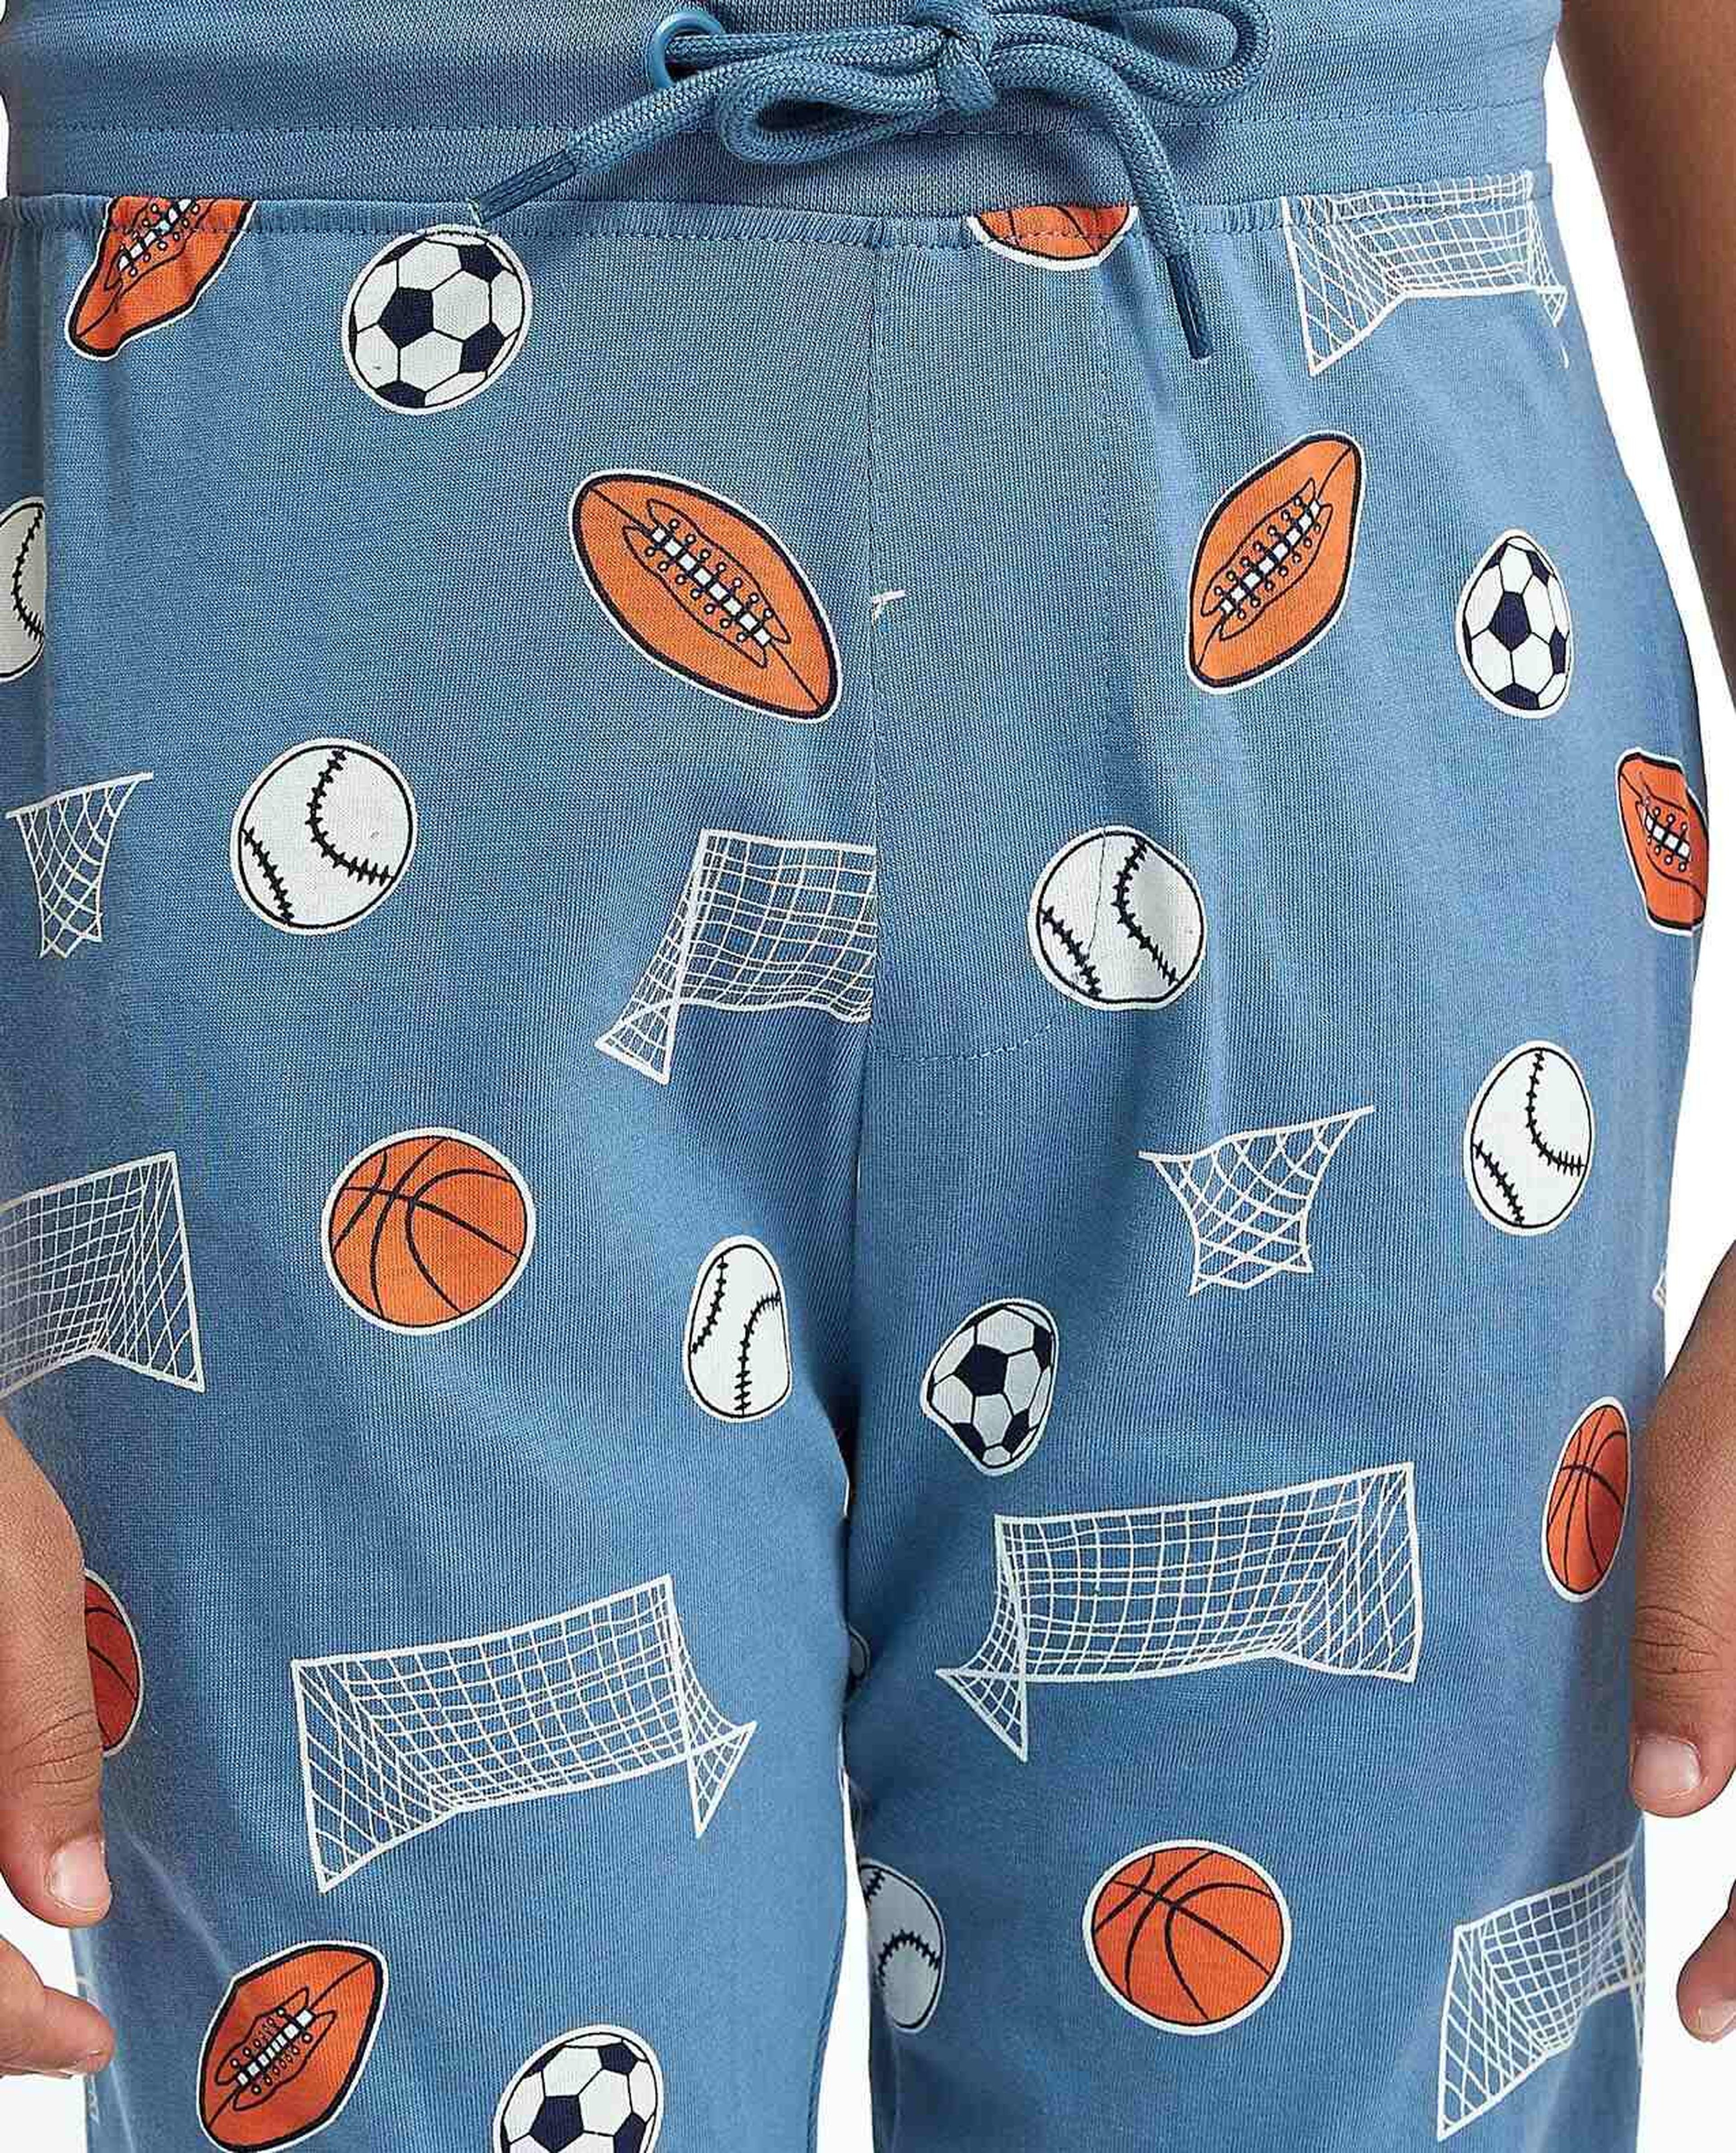 Printed Short Sleeves Pyjama Set